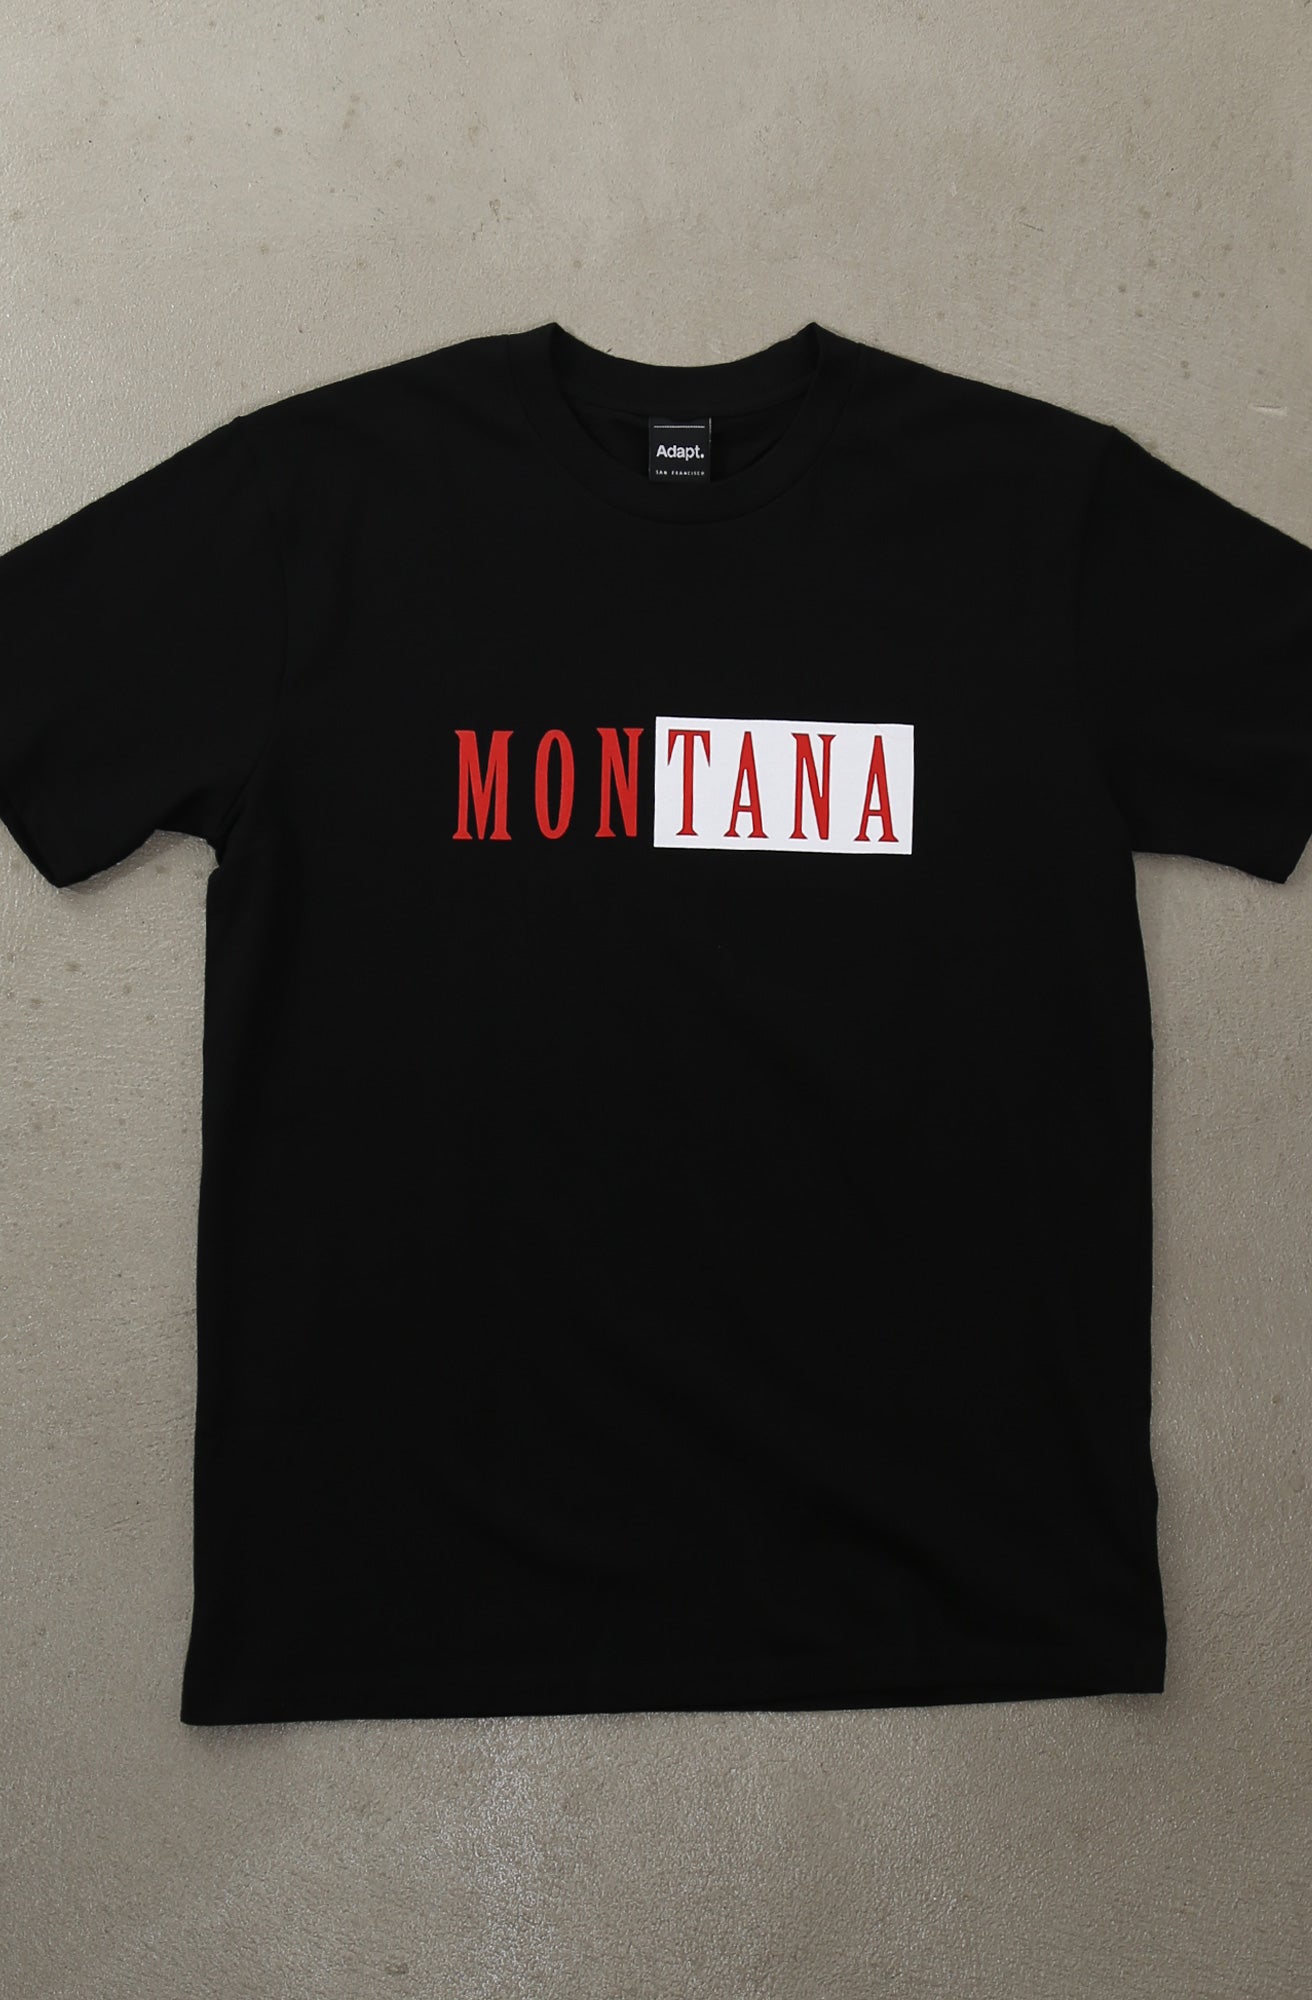 Montana (Men's Black Tee)